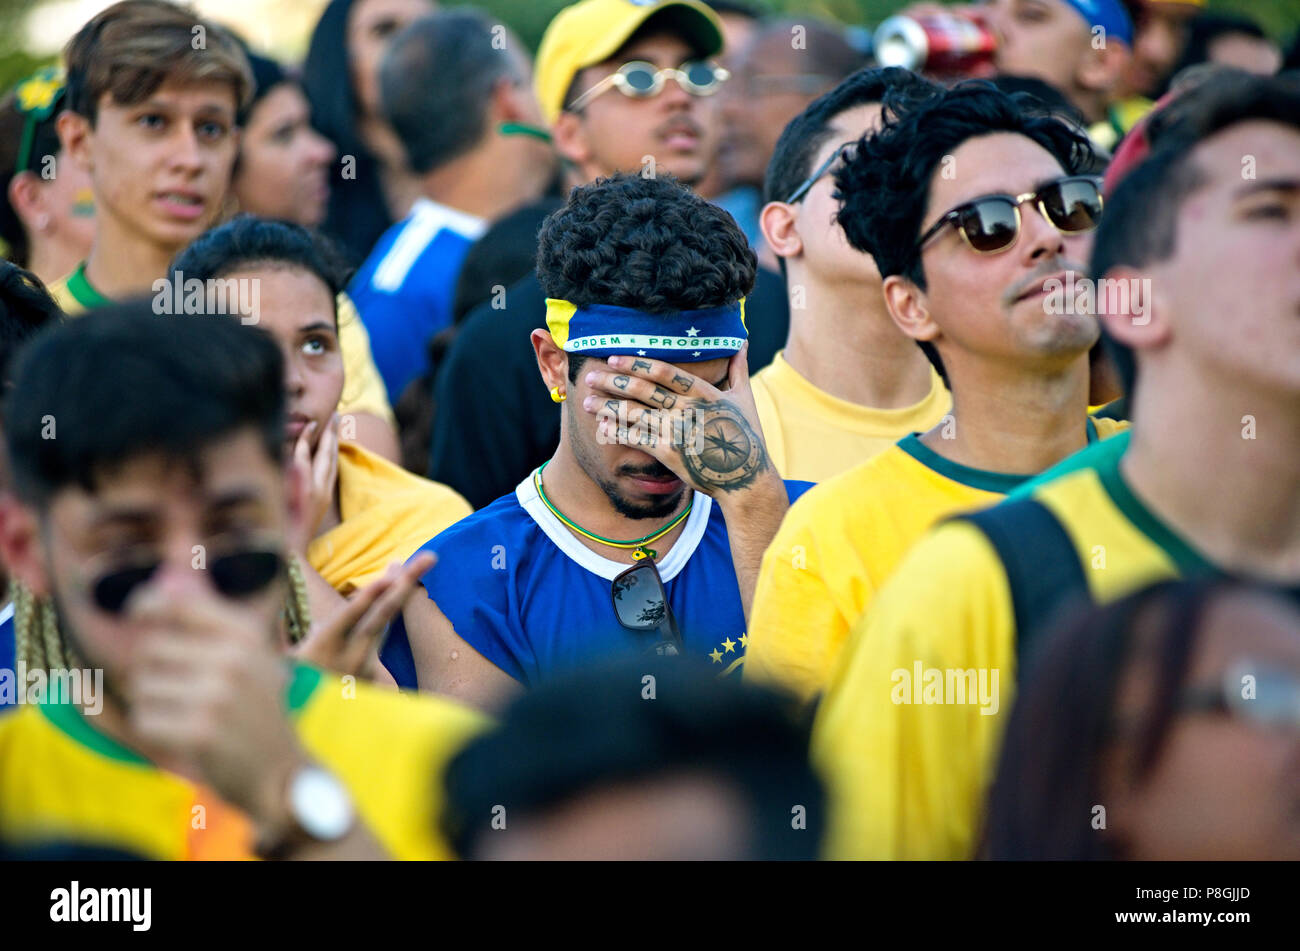 World Cup - Luglio 6, 2018: preoccupato per il calcio brasiliano tifosi guardare una ripresa televisiva del match tra il Brasile e il Belgio a Rio de Janeiro Foto Stock